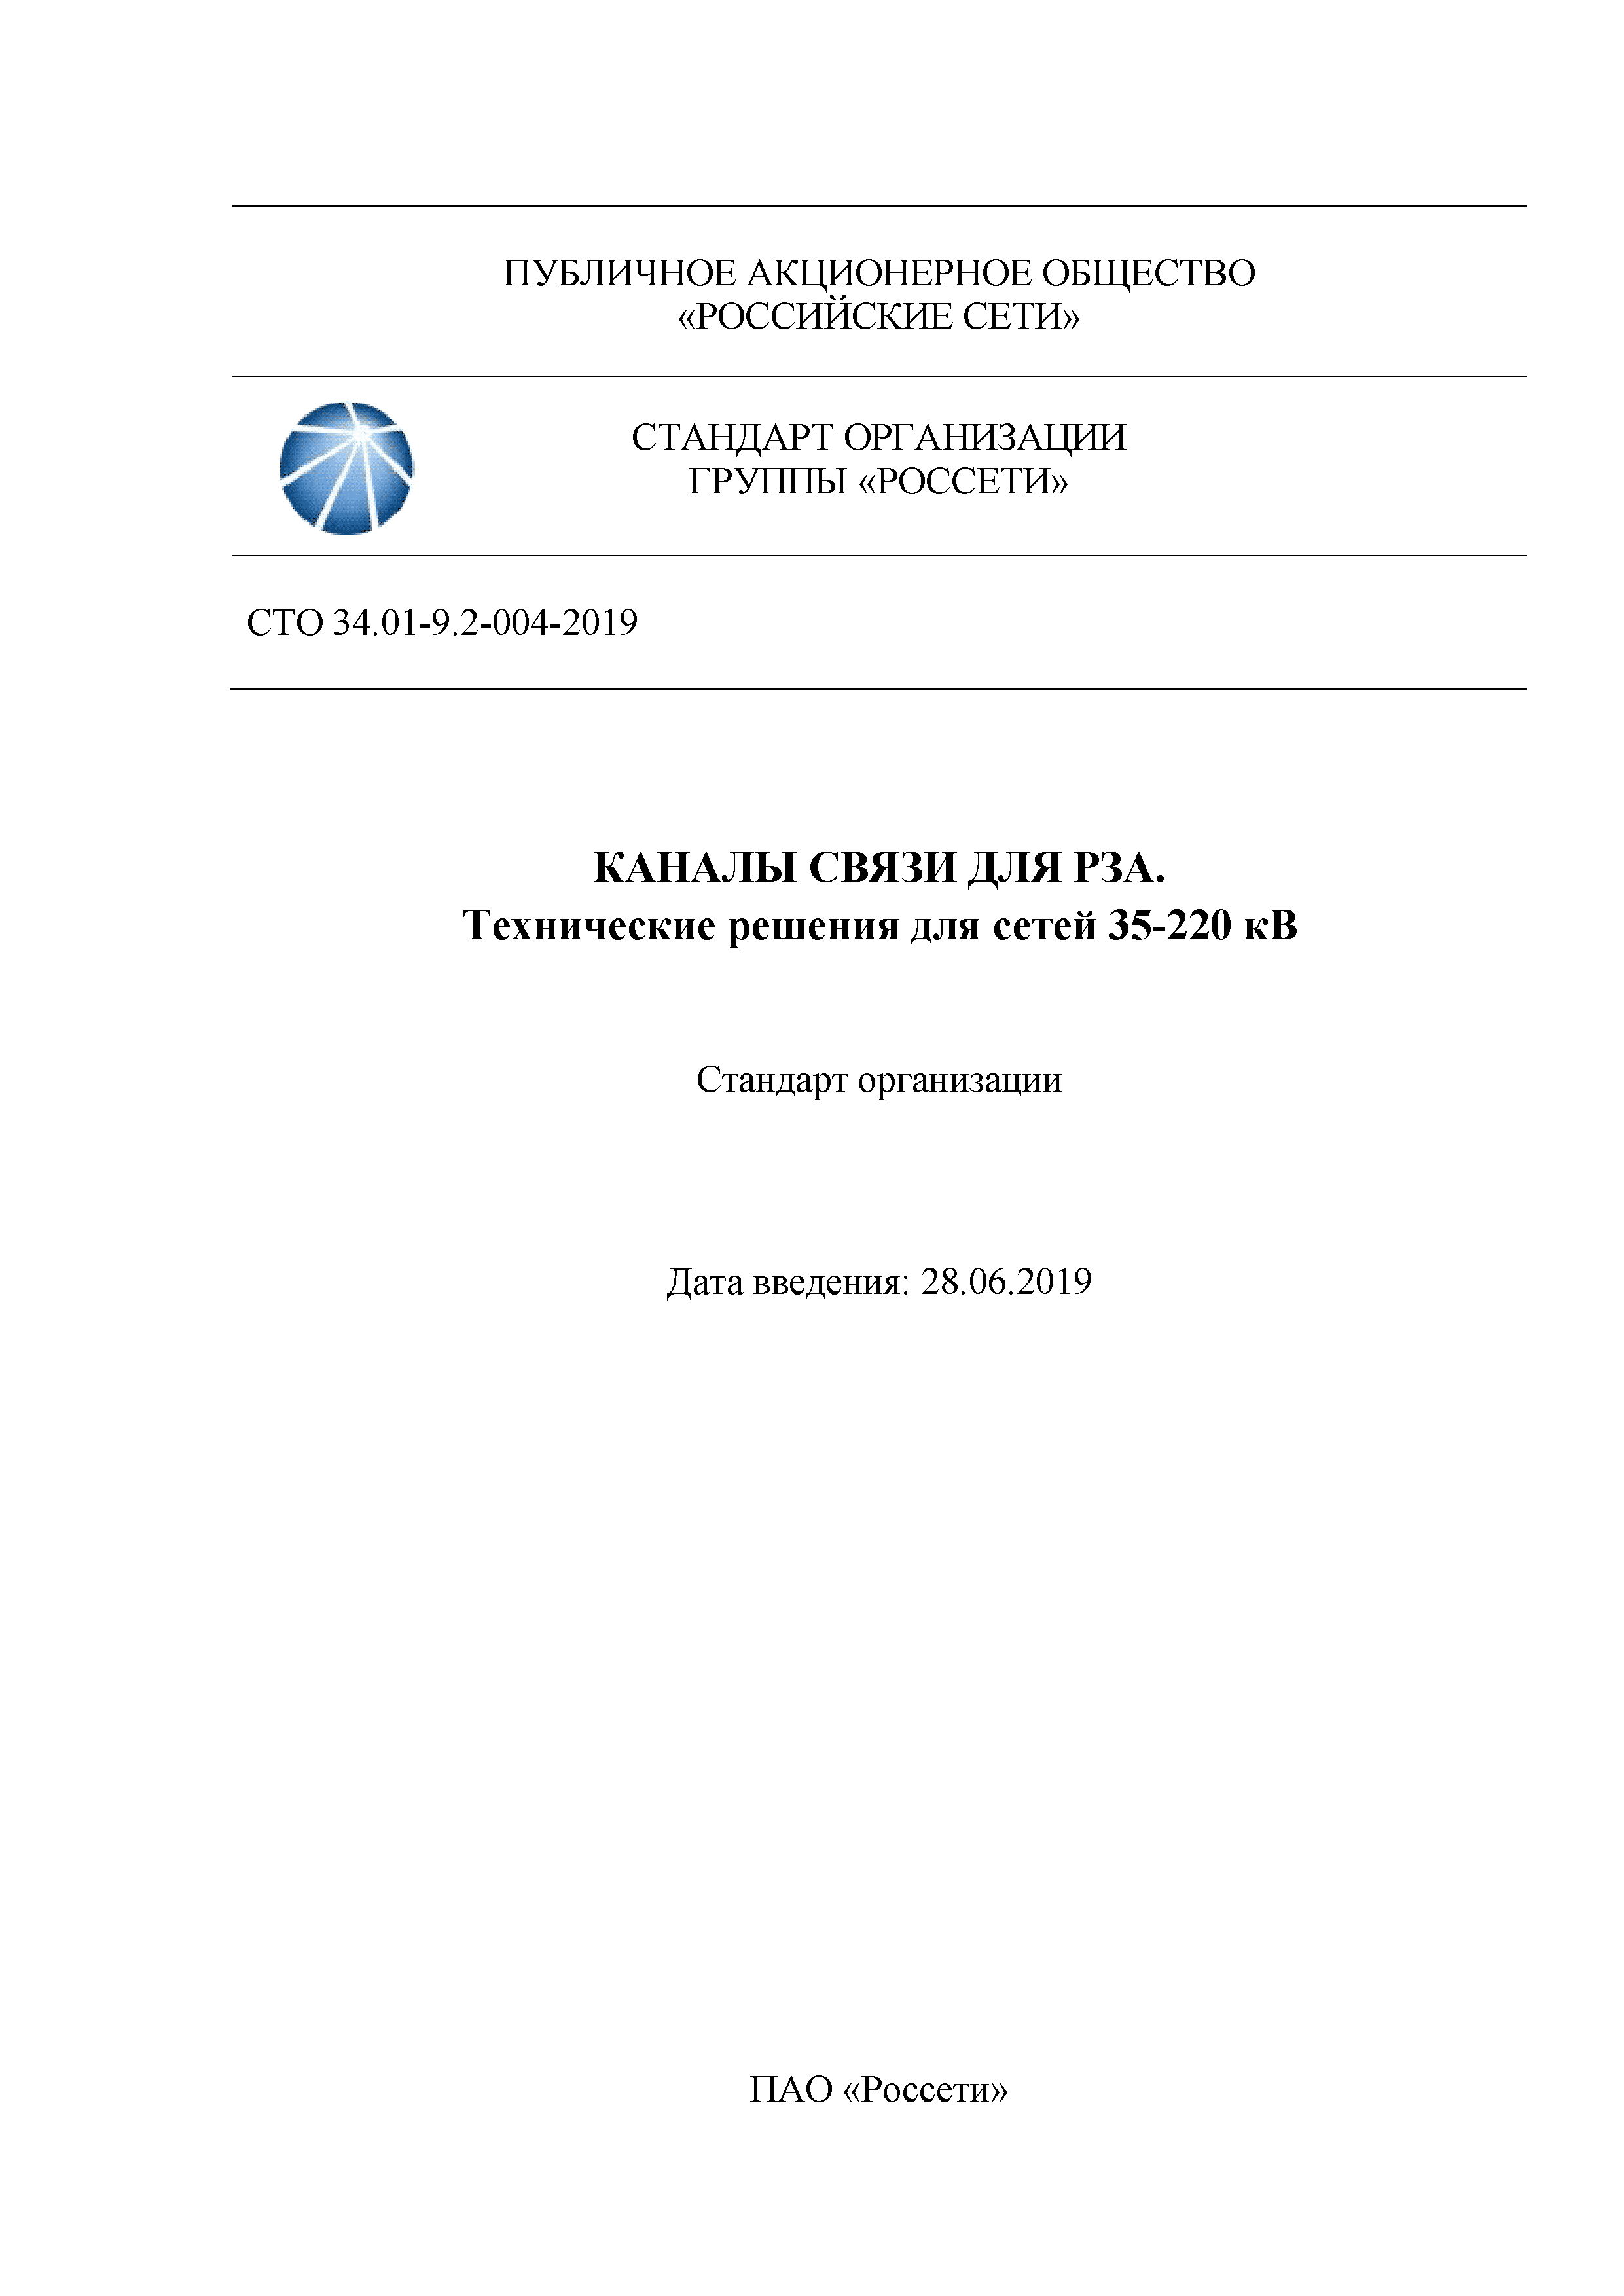 СТО 34.01-9.2-004-2019